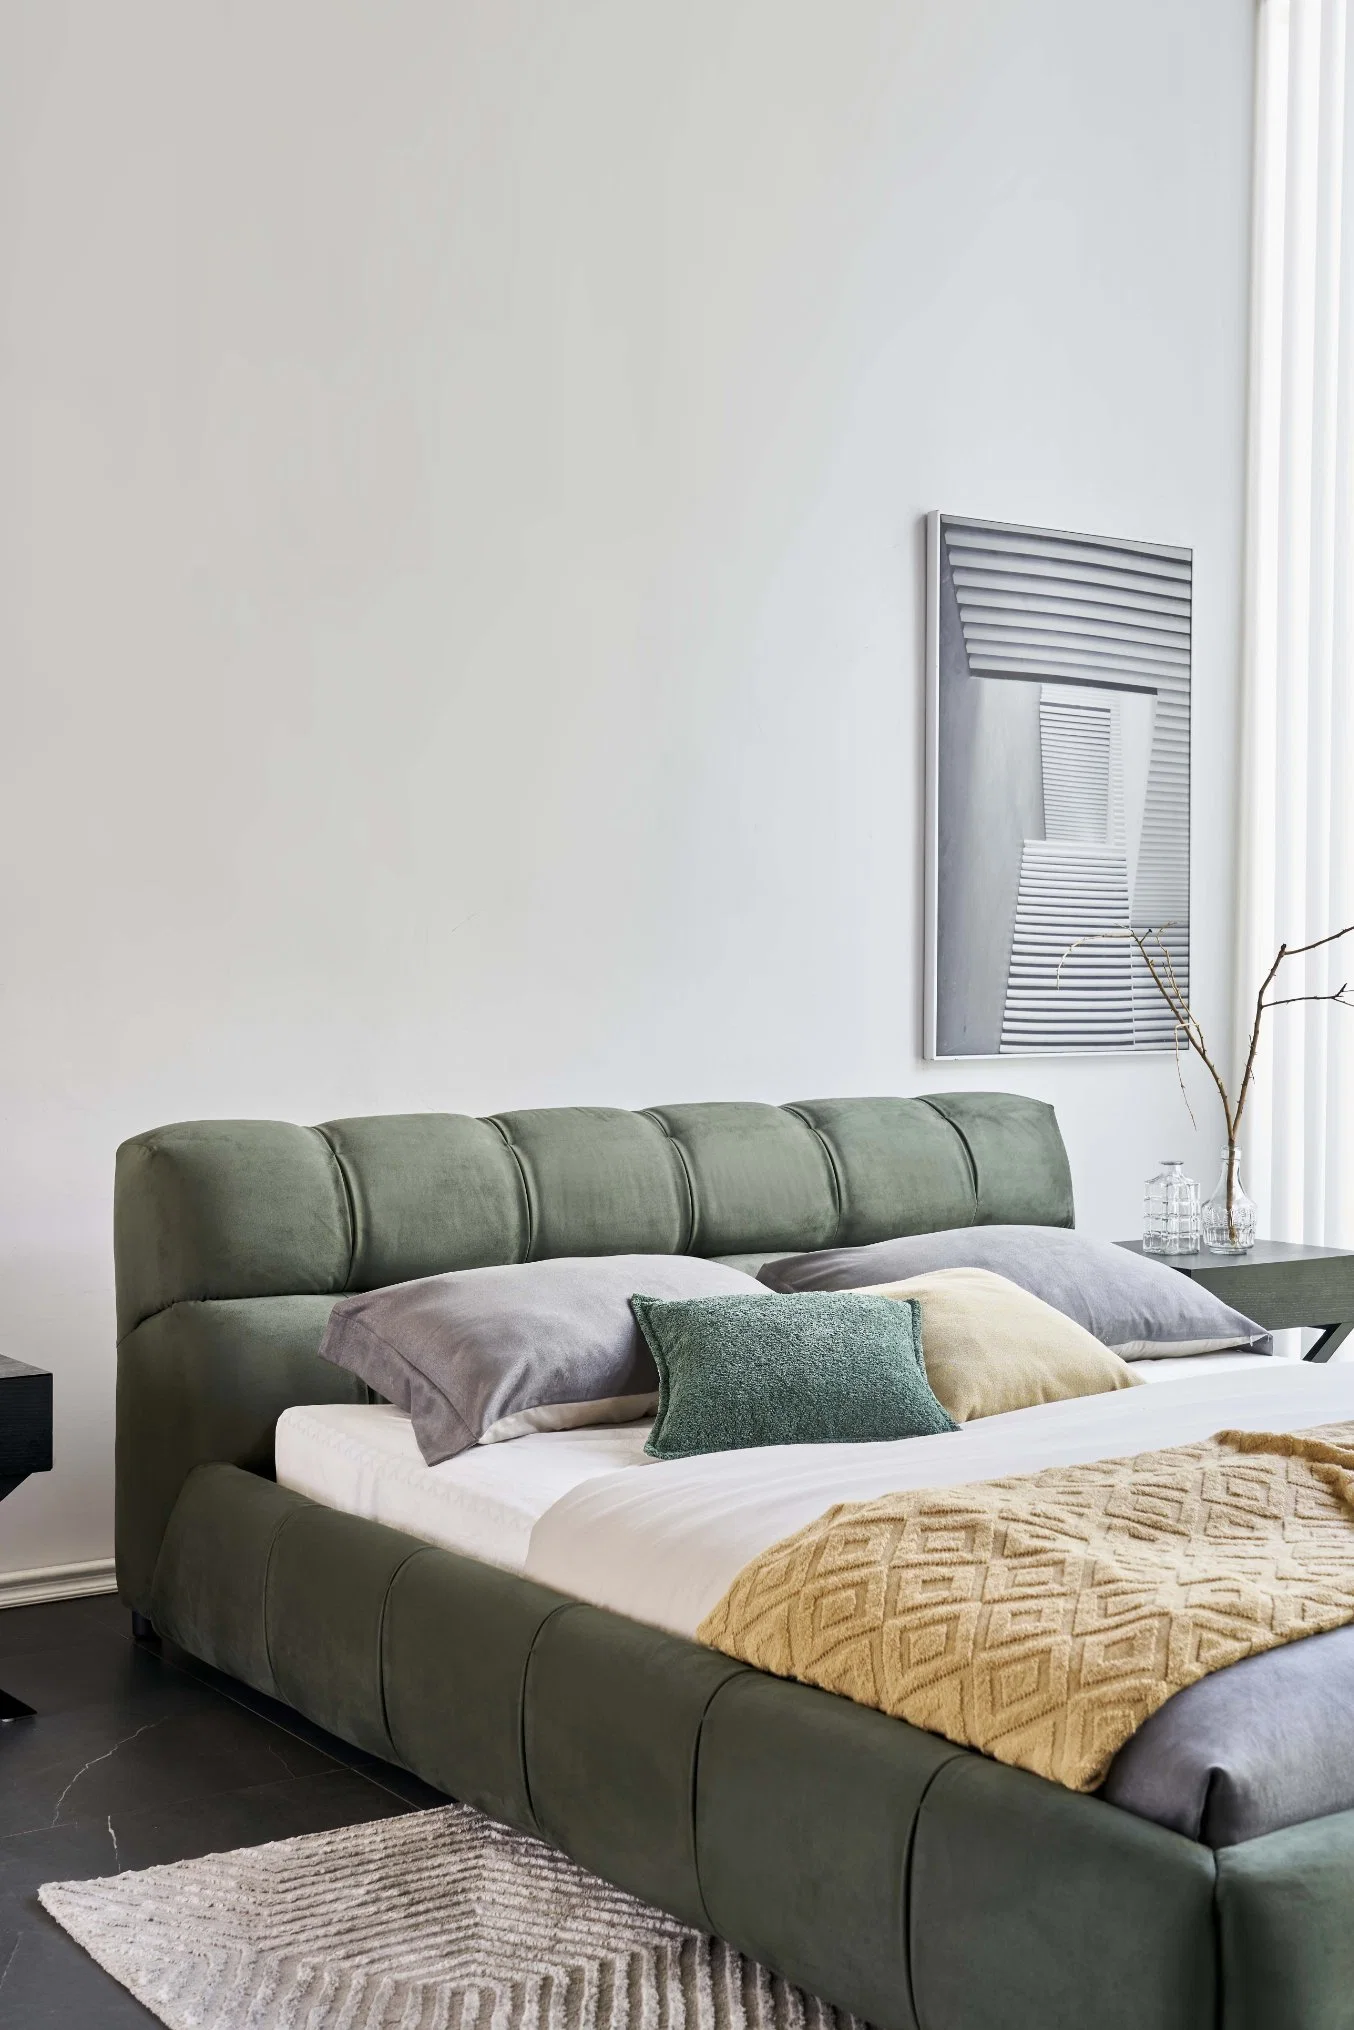 Мебель Khaki Современная спальня кровати Наборы Wrinkle Fold King Size Итальянские дизайны Королева ткань рама кровати